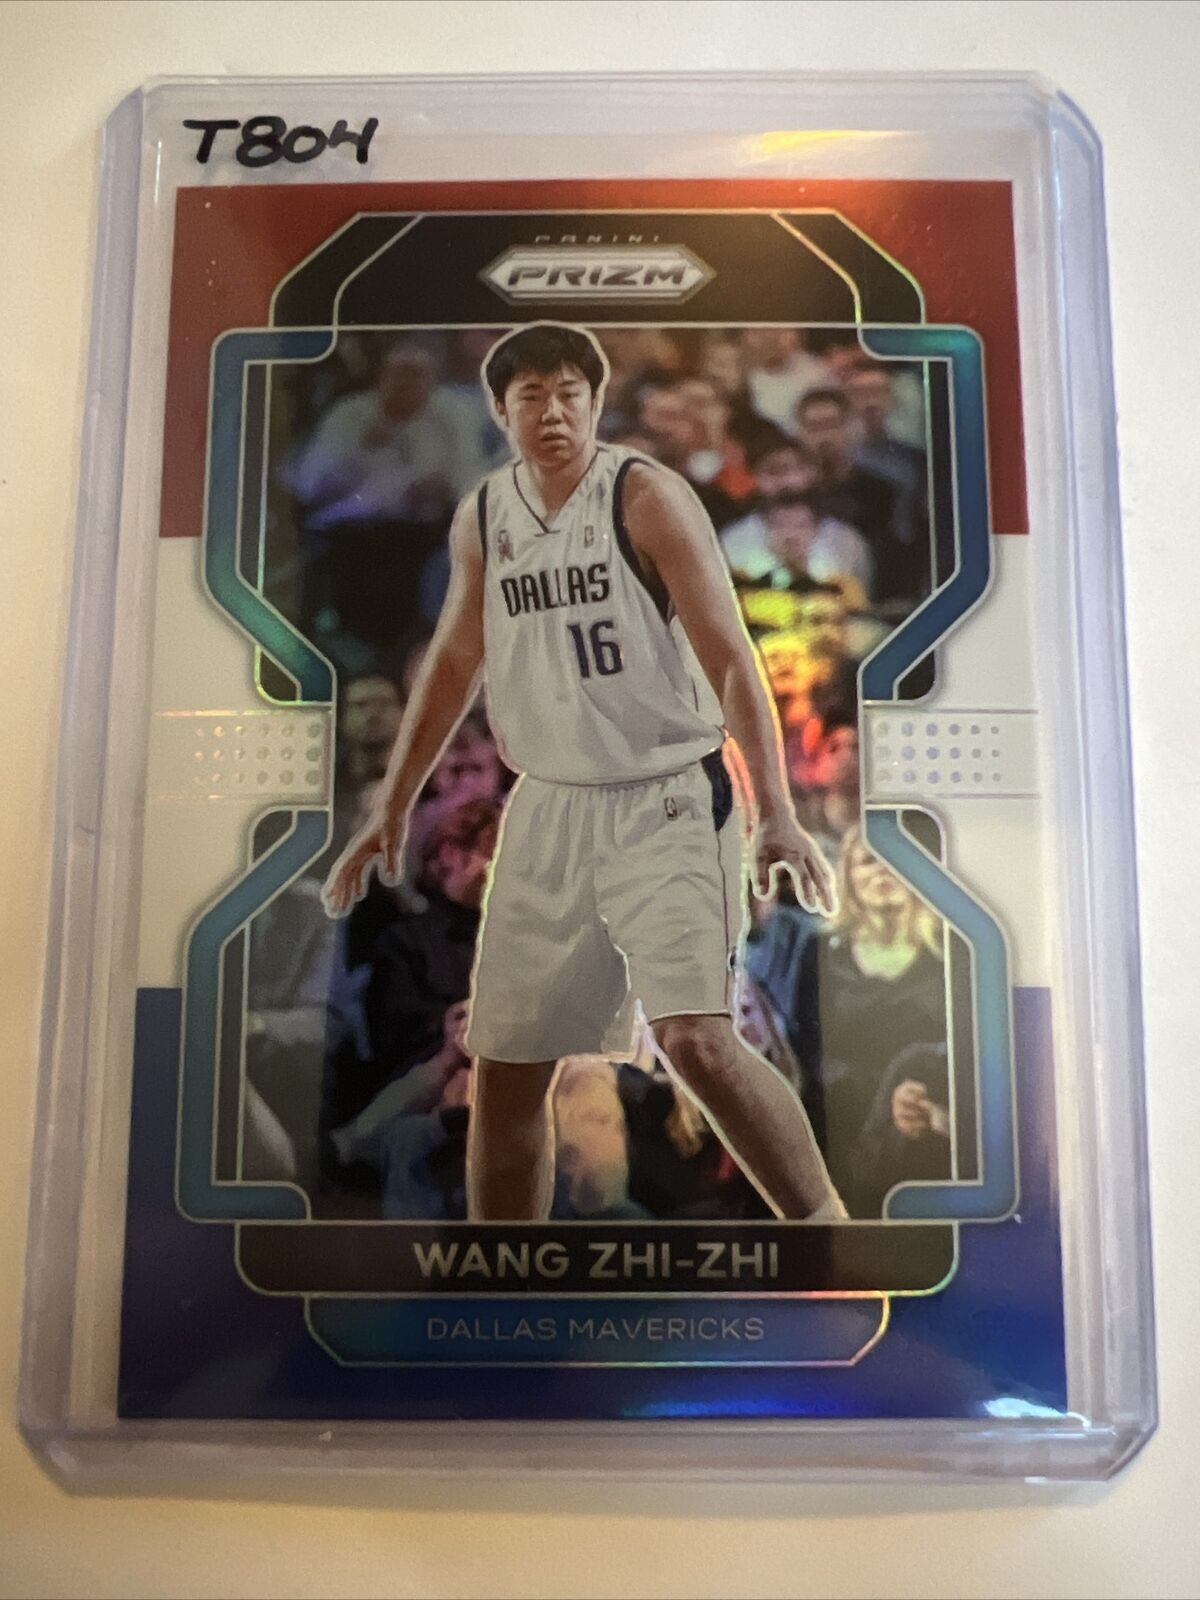 WANG ZHI-ZHI 2021-22 PANINI PRIZM RWB PRIZM CARD RED WHITE BLUE #273 MAVs T804